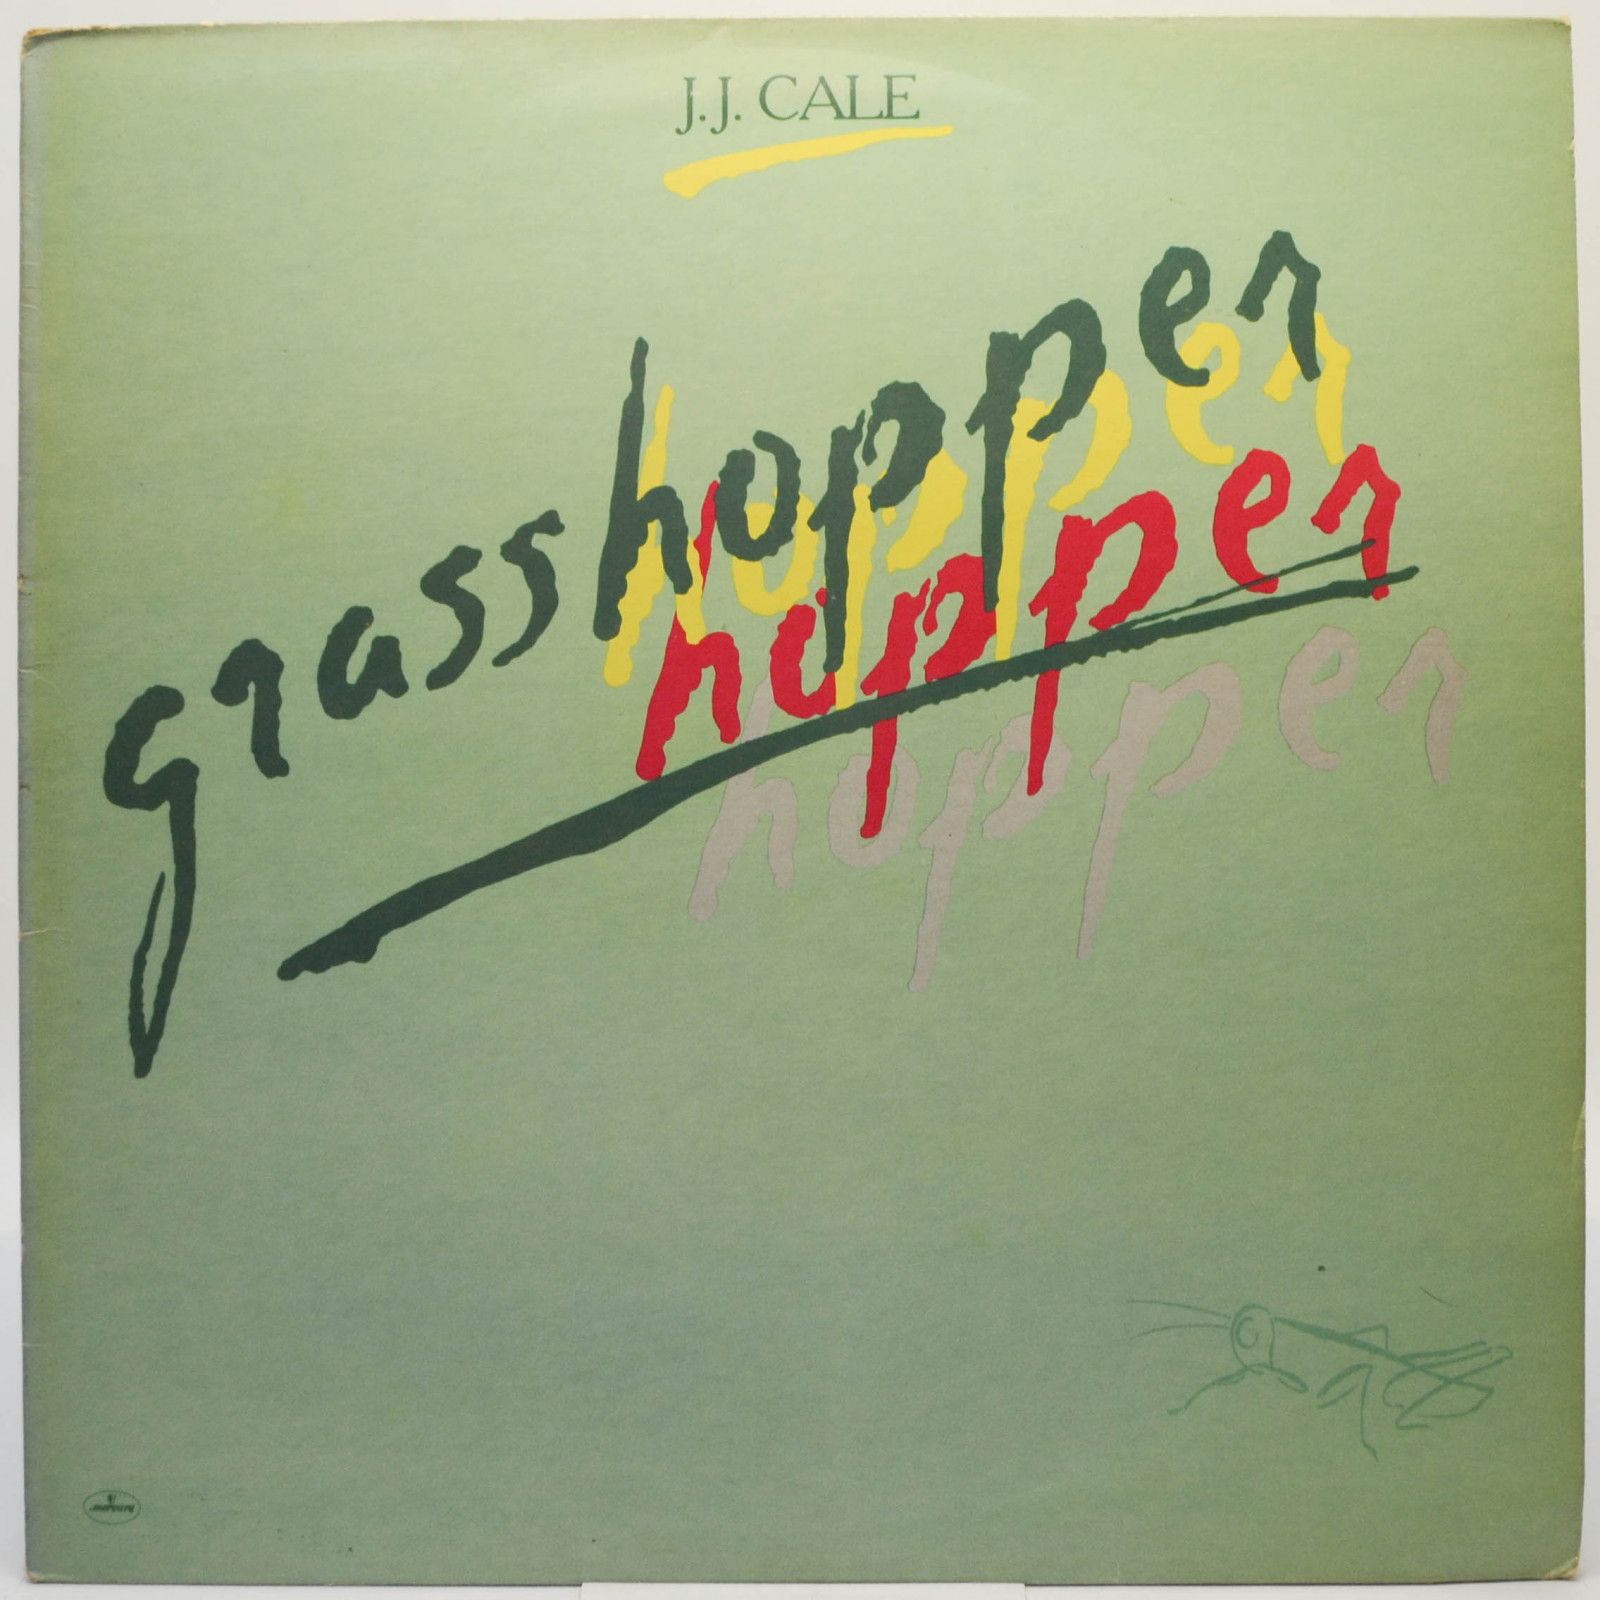 J.J. Cale — Grasshopper, 1982